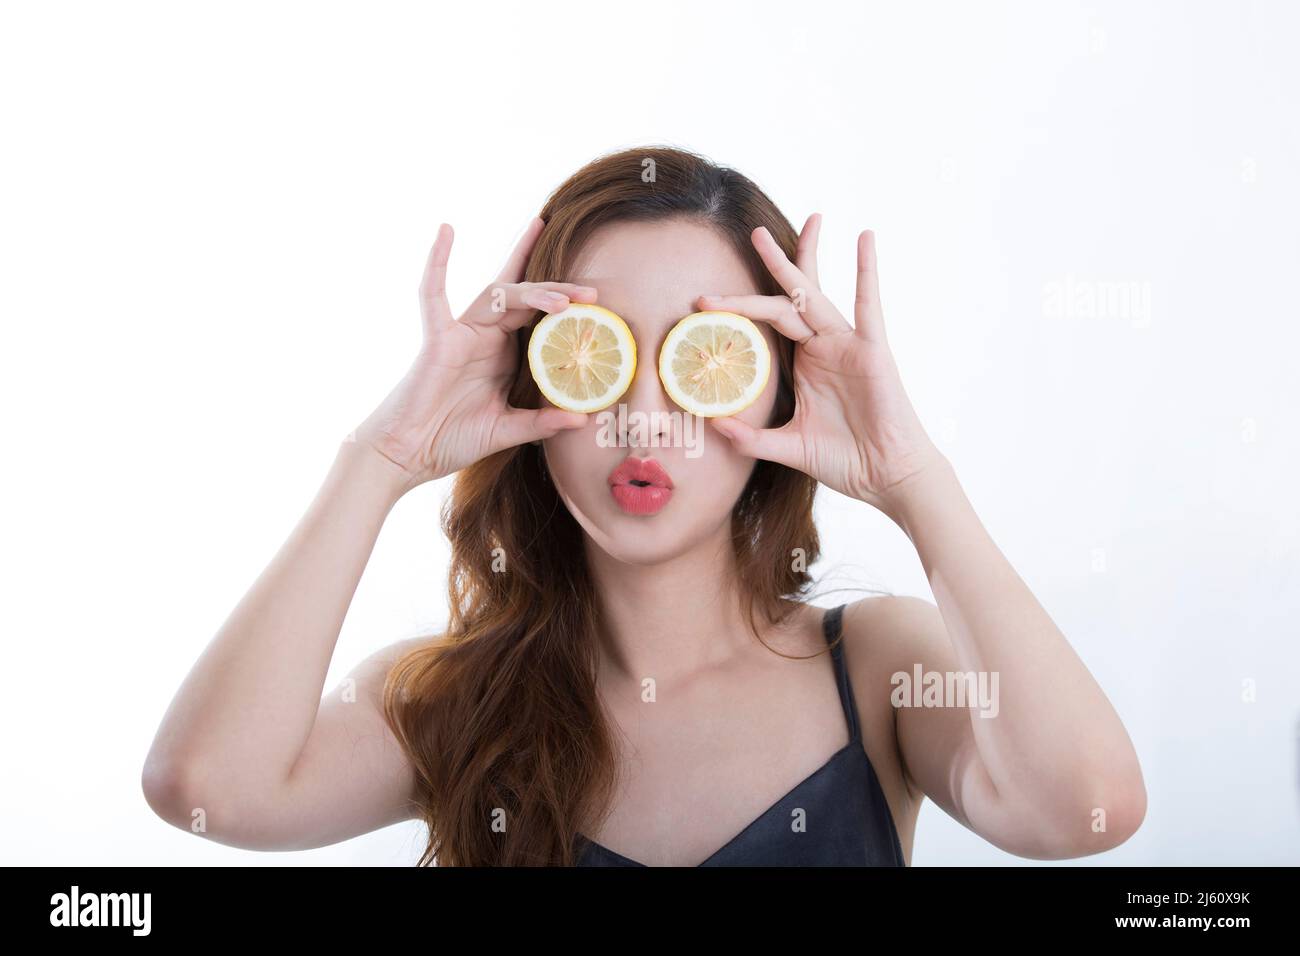 Hübsche junge Dame bedeckte ihre Augen spielerisch mit einer Zitronenscheibe, auf weißem Hintergrund - Stockfoto Stockfoto